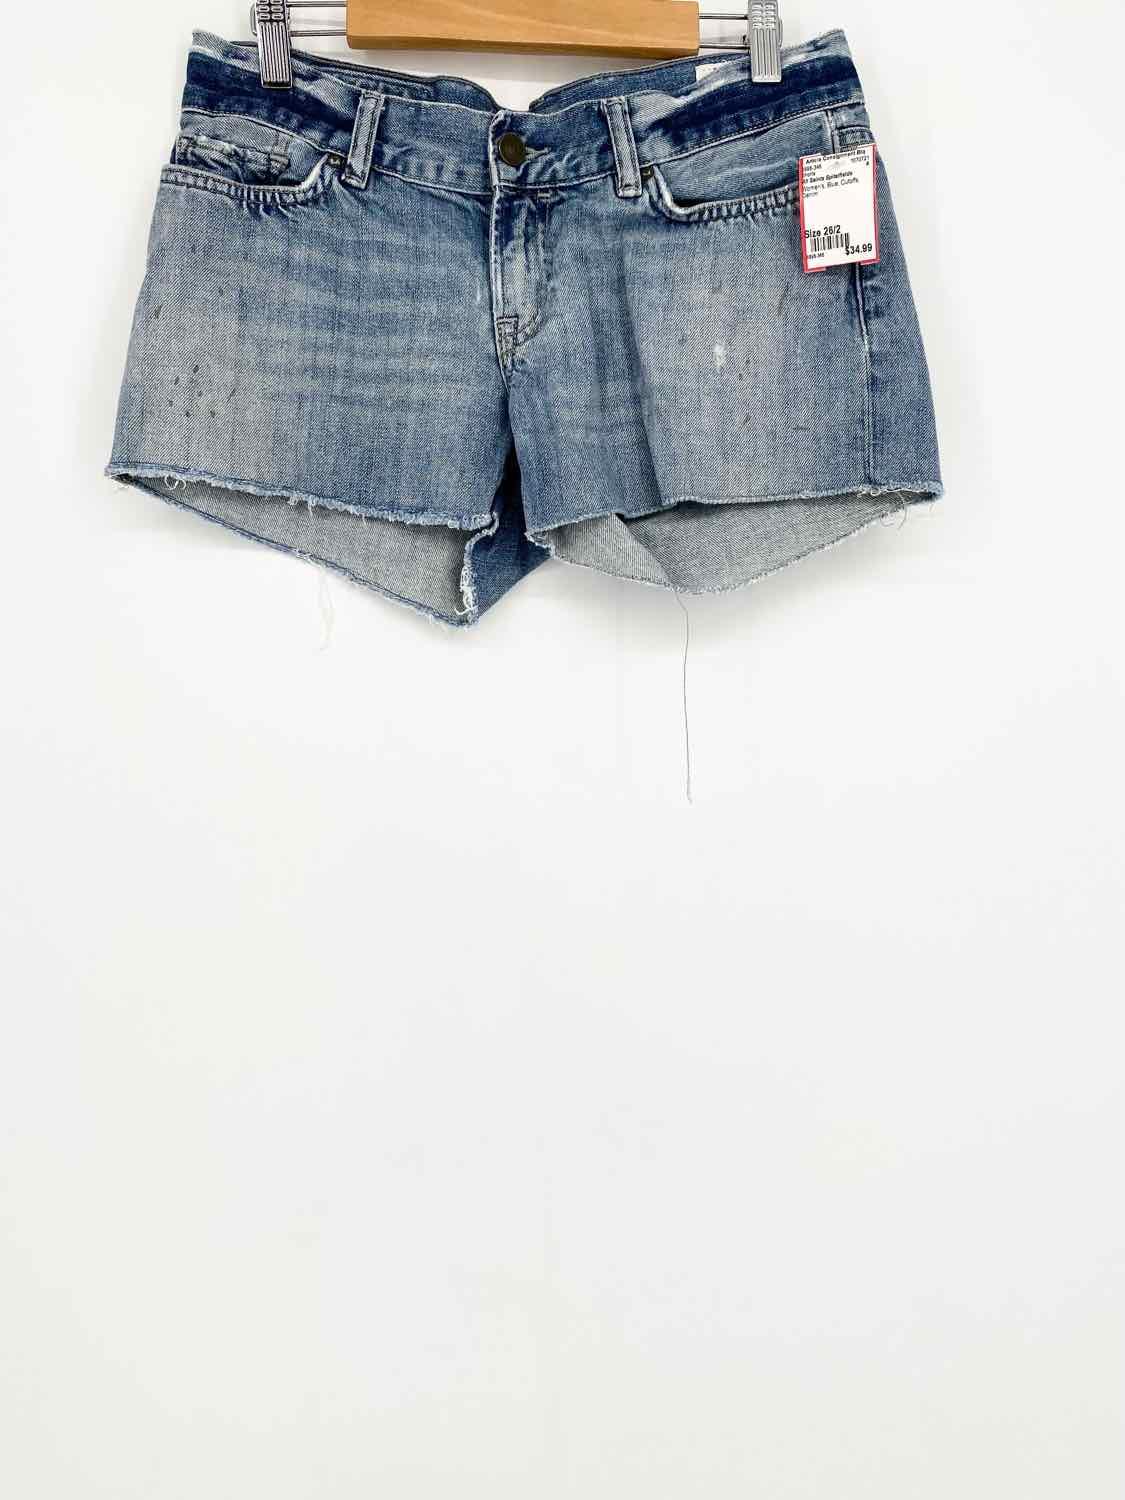 Louis Vuitton Authenticated Denim Shorts